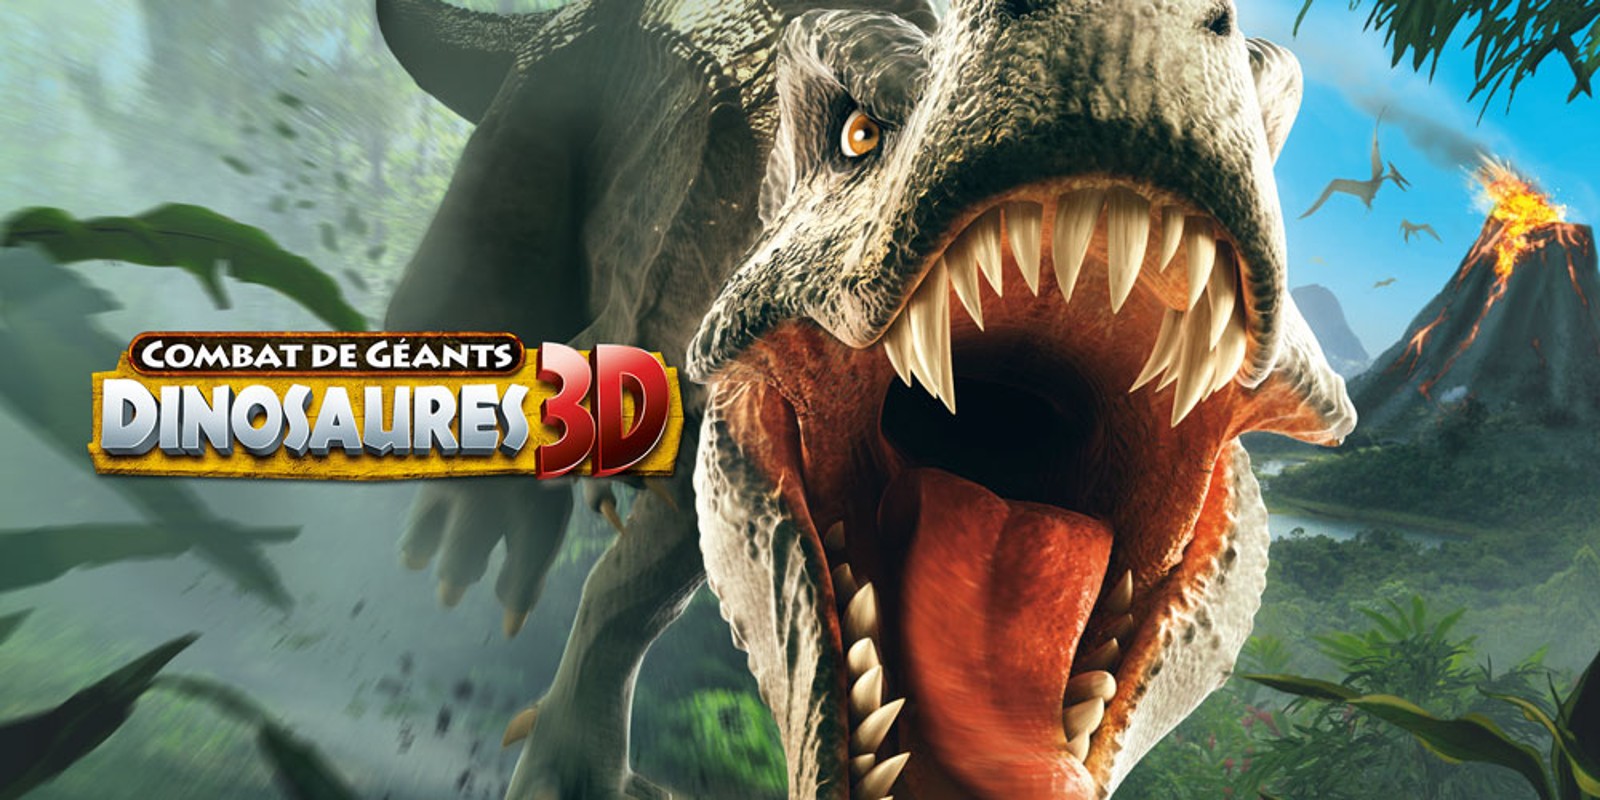 Combat de Géants Dinosaures 3D